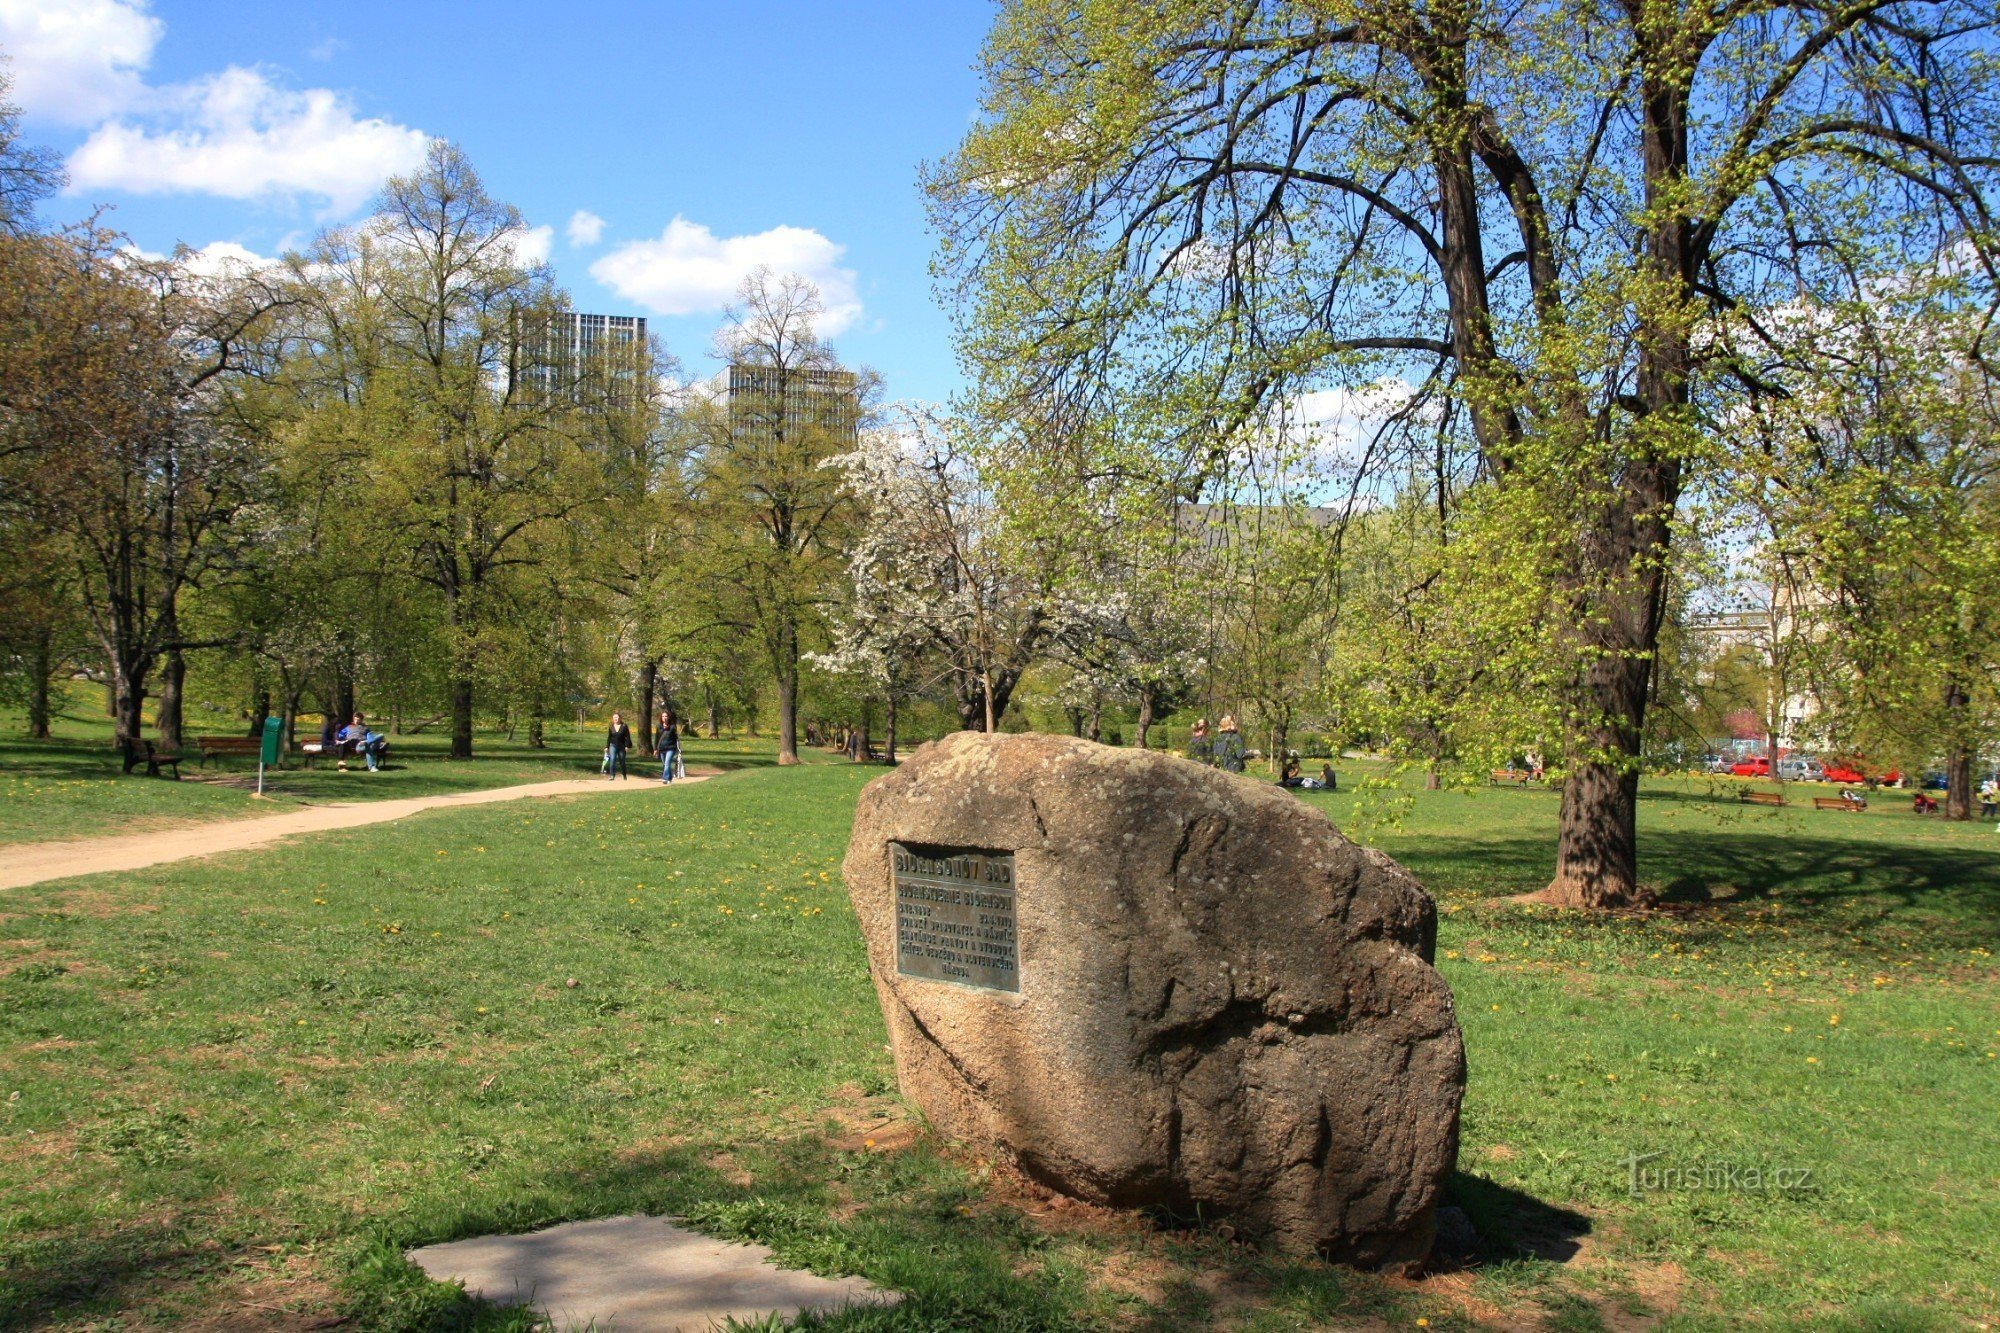 Björsen garden - a stone with a commemorative plaque